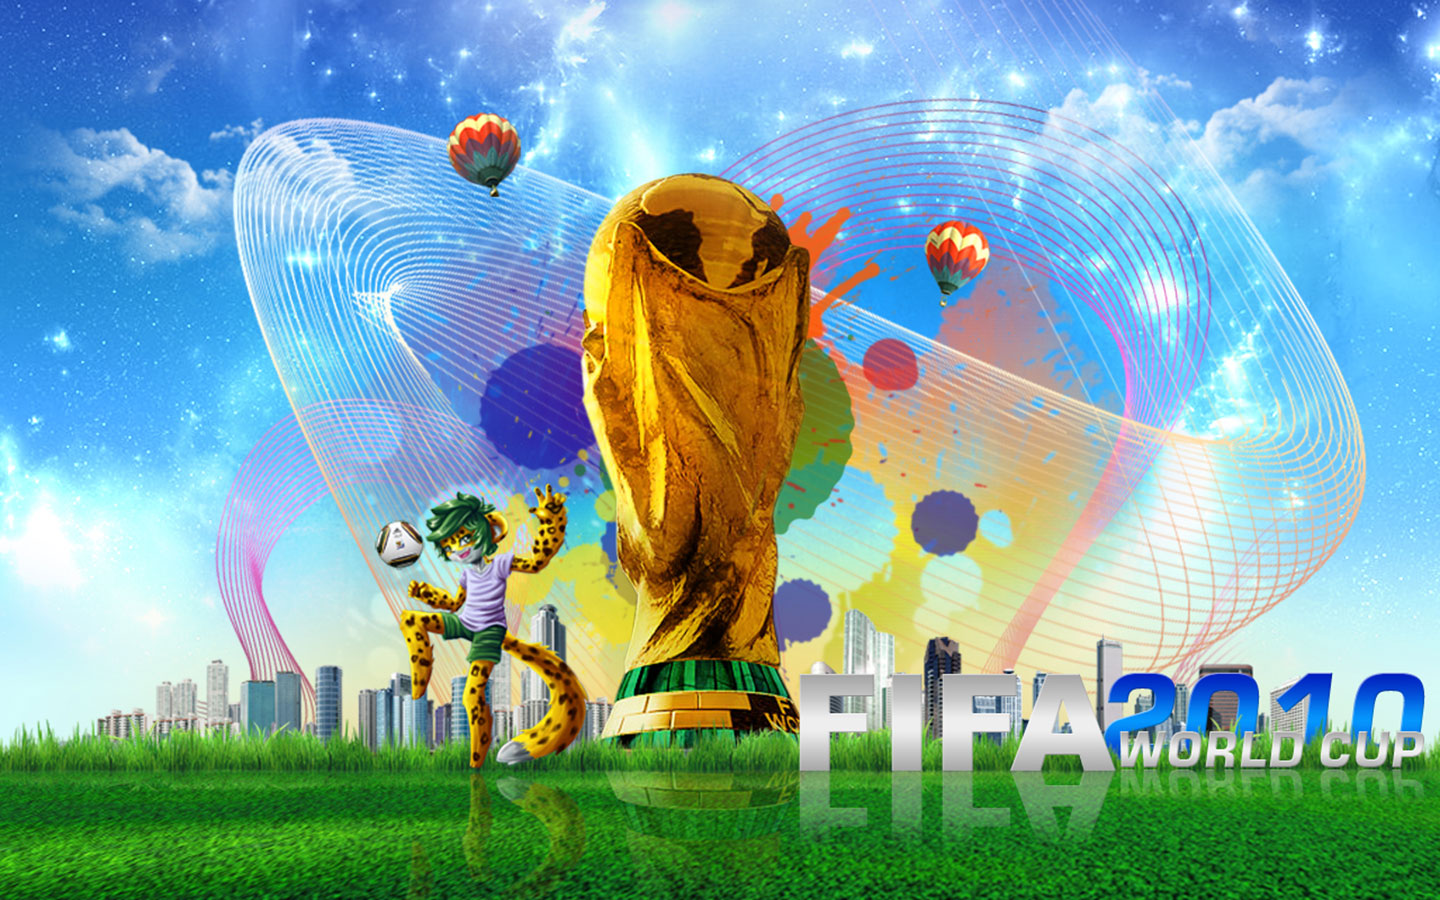 https://blogger.googleusercontent.com/img/b/R29vZ2xl/AVvXsEjFUNQi29GRvBFwmpBrRPNg5VHshpJxBBtrBTEdRrkYCjvEqqB9DFoImmnjJmC21HjEHYXYC8SeCYKKZjNAoZID3Sp1F9u4Aq77LH0Uy_wu5GhoCfEu2y4kvGH6AZff2W3OfIW2mqcTKySJ/s1600/FIFA-2010-World-Cup-1440x900-Wallpaper.jpg